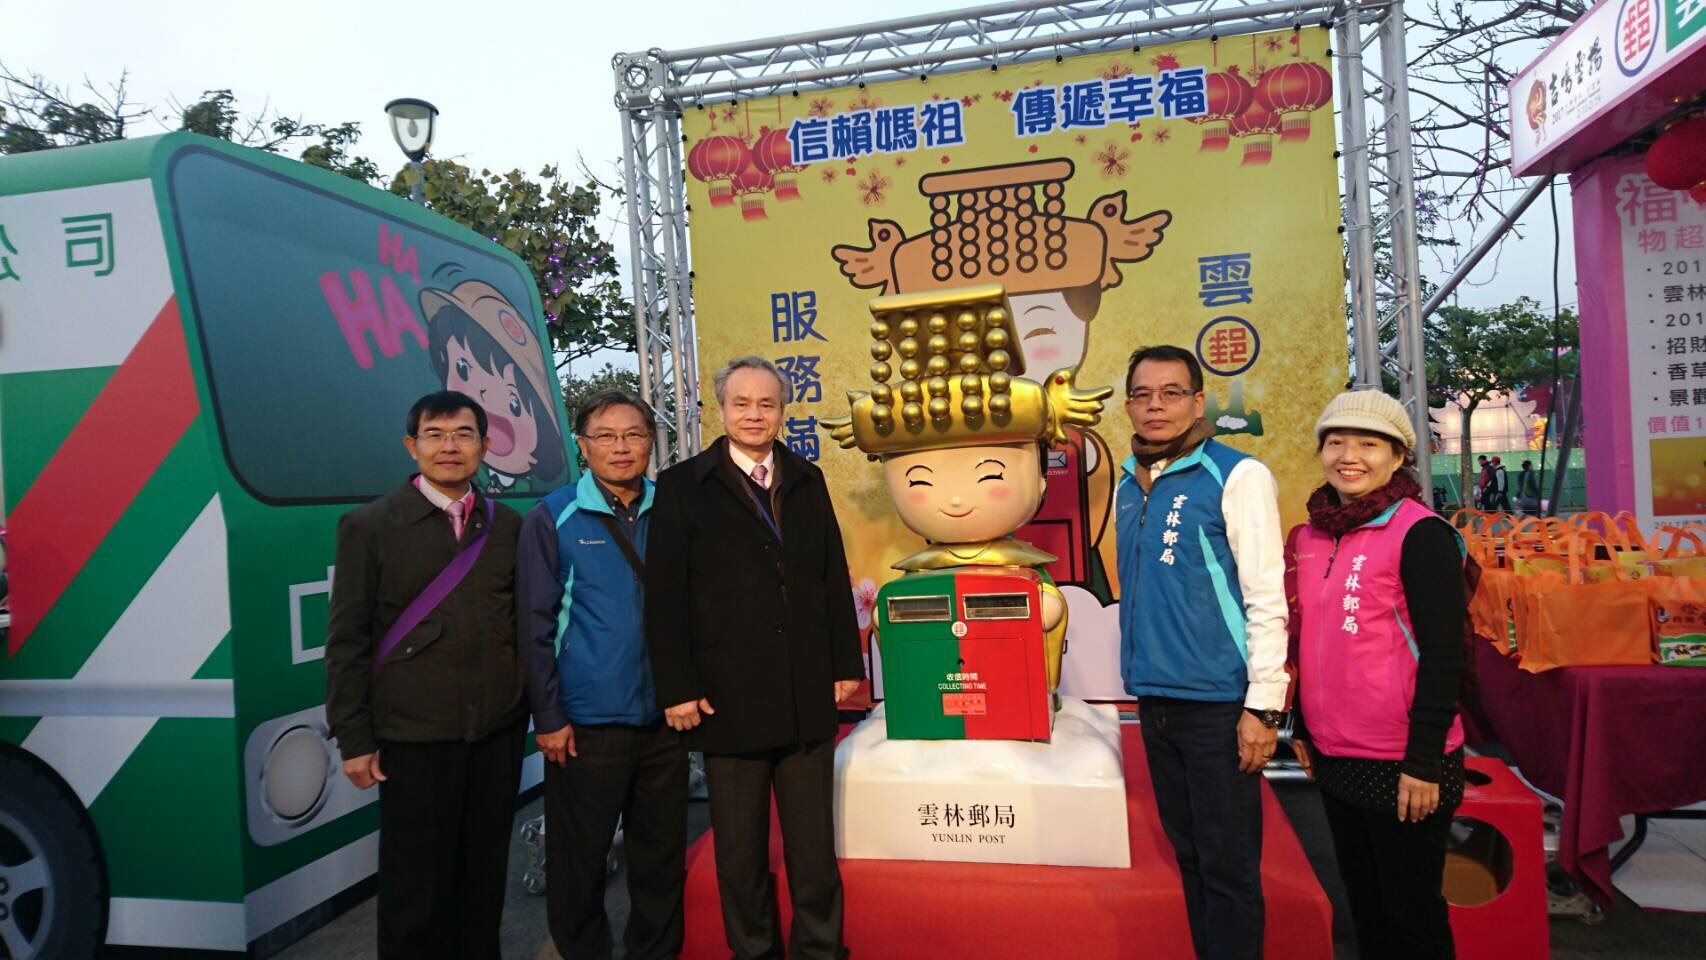 「2017年台灣燈會在雲林－中華郵政服務區」